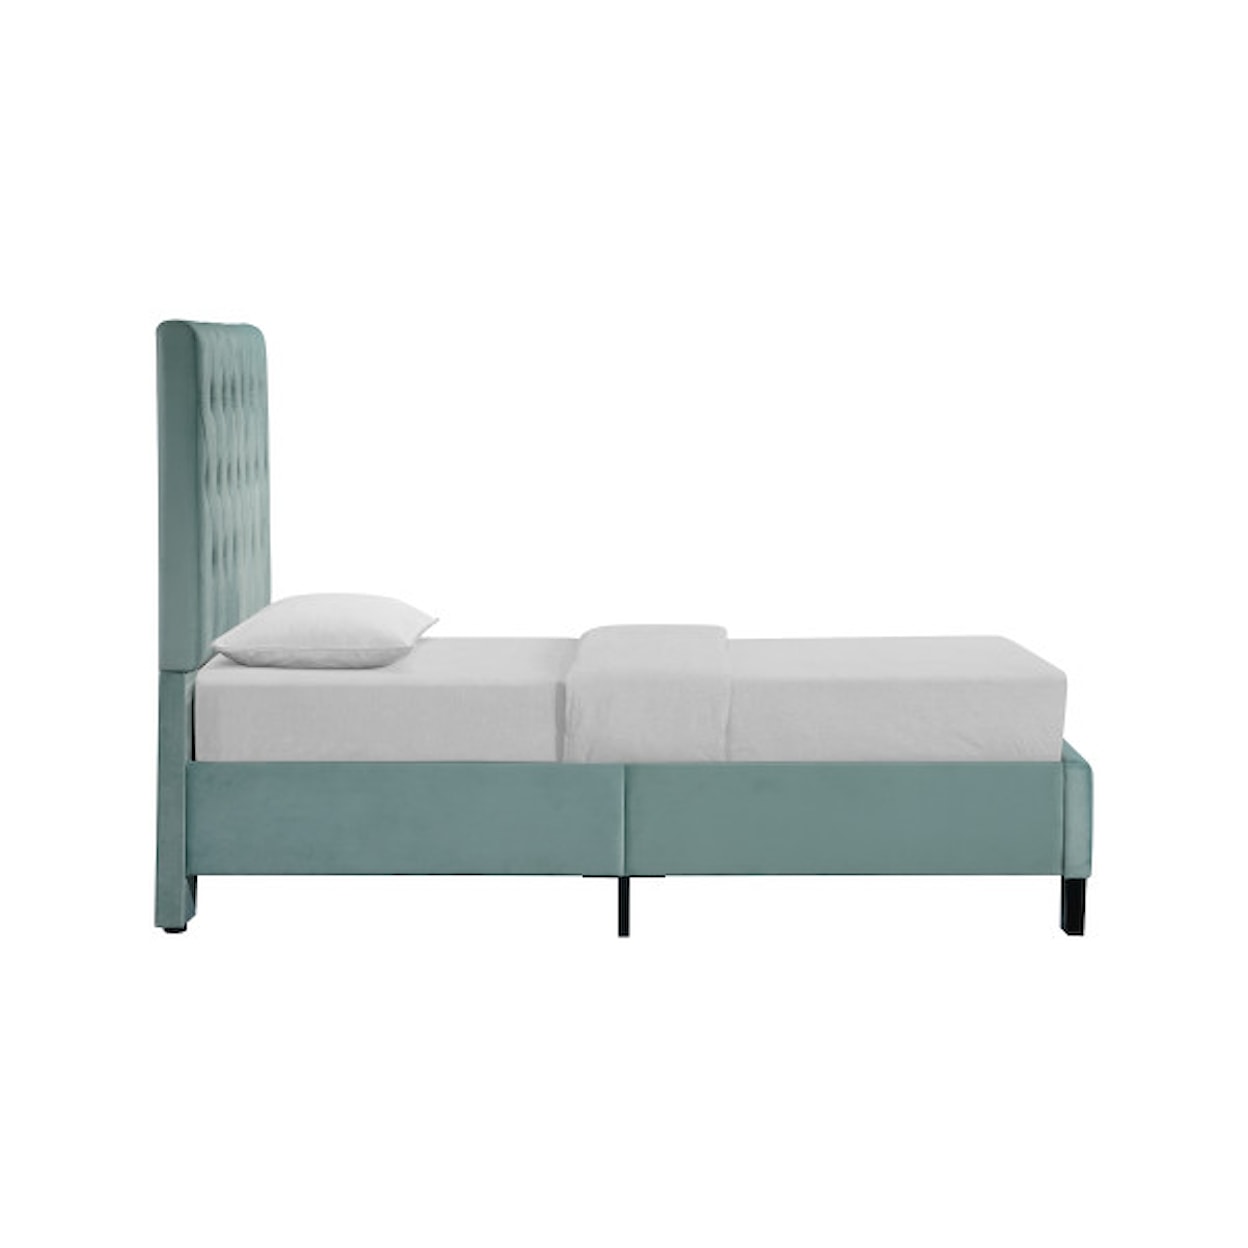 Emerald Amelia Twin Upholstered Bed